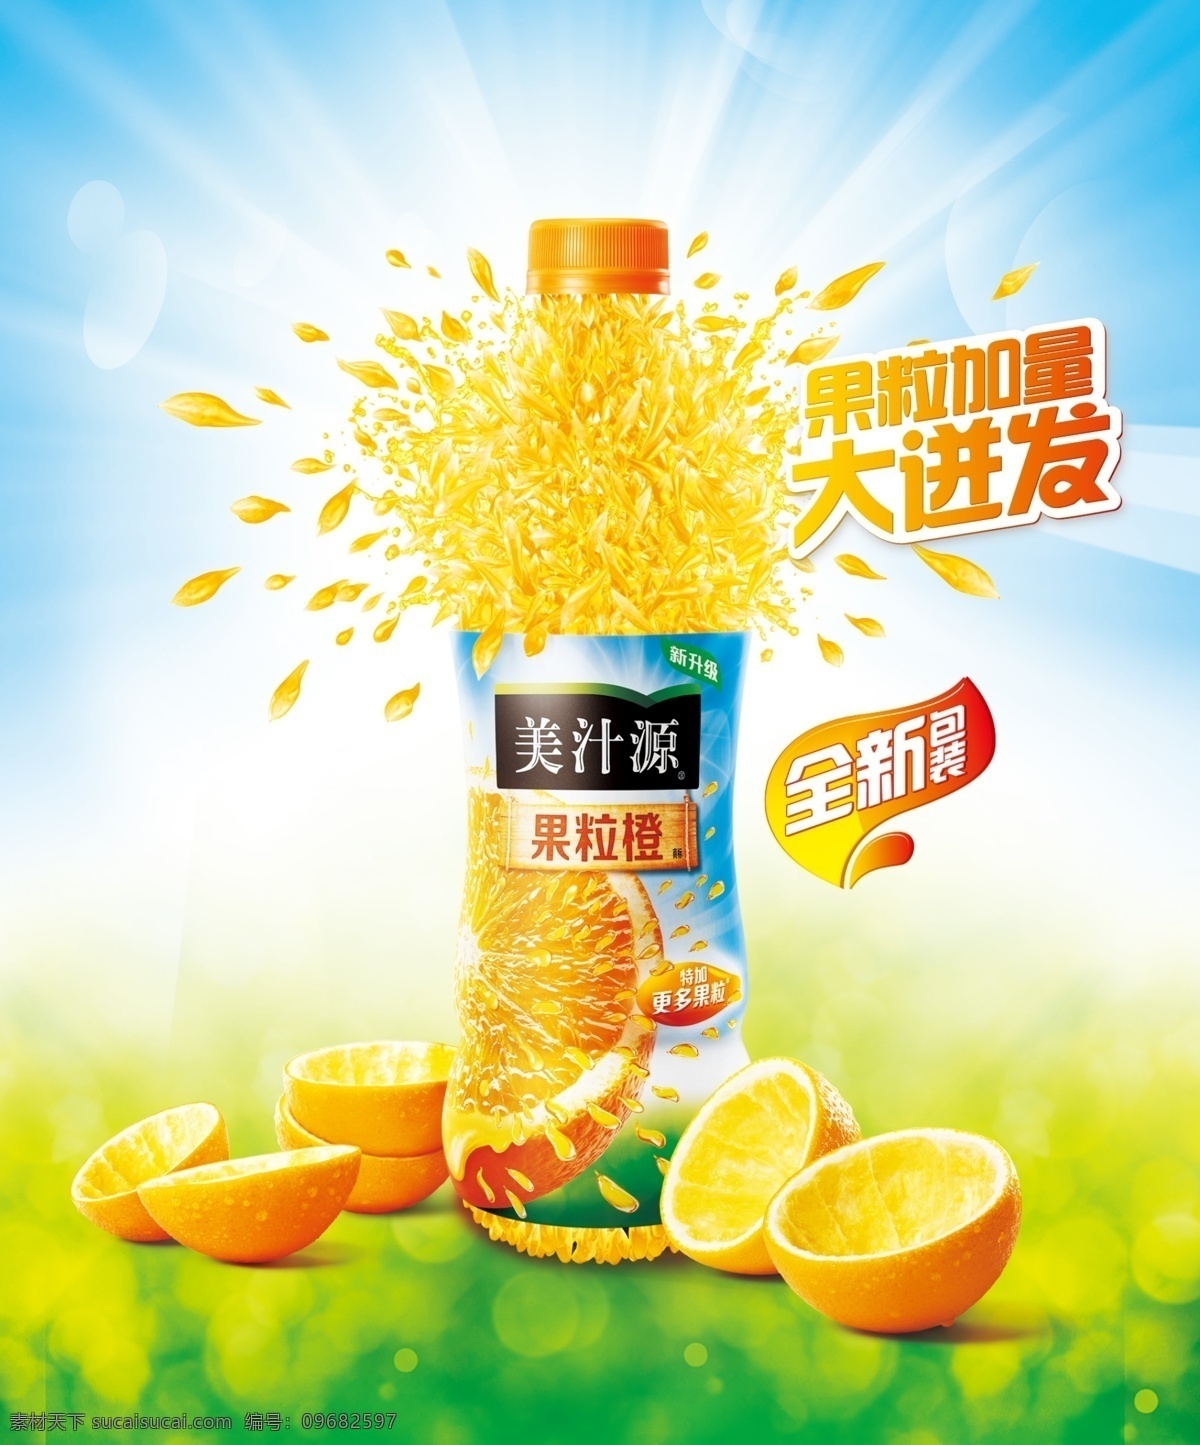 果汁海报图 美 汁 源 果汁 橙汁 美汁源 果汁橙汁 绿色背景 海报 广告图片